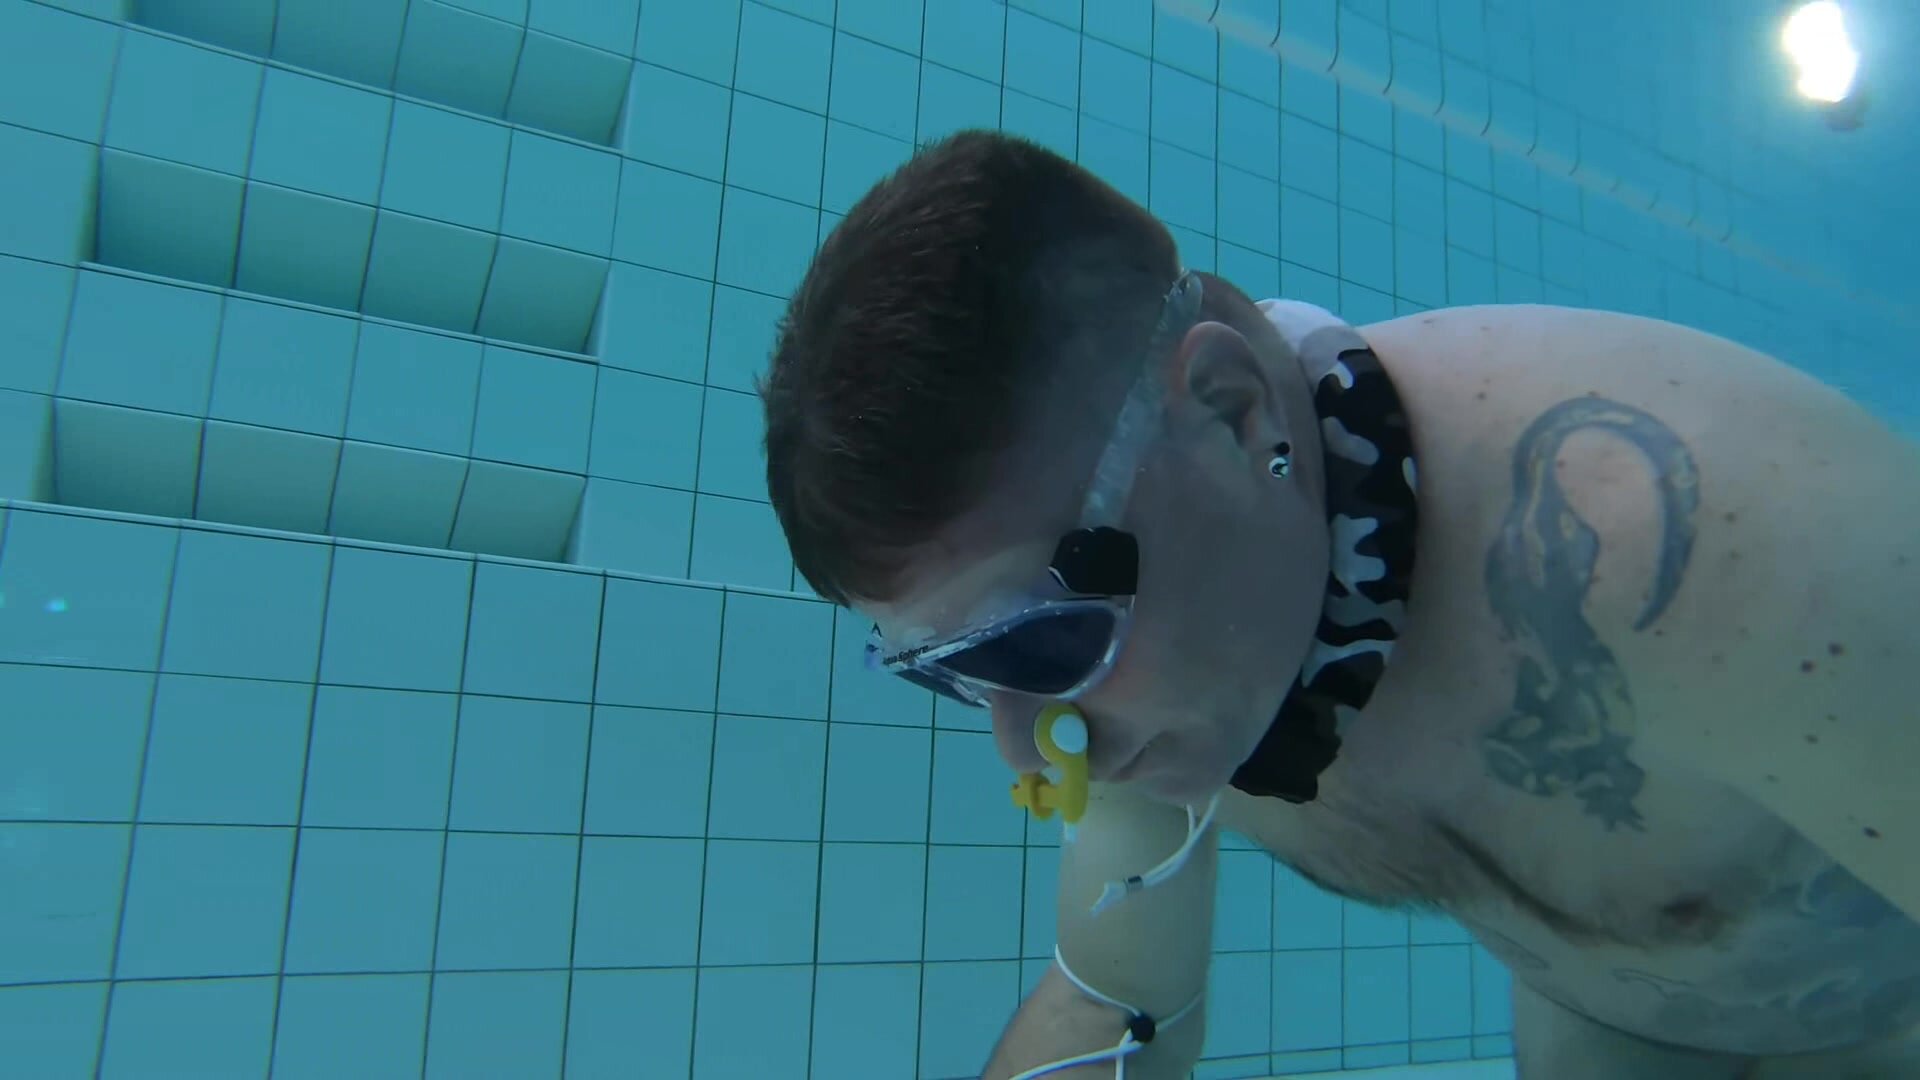 German freedivers training underwater in pool